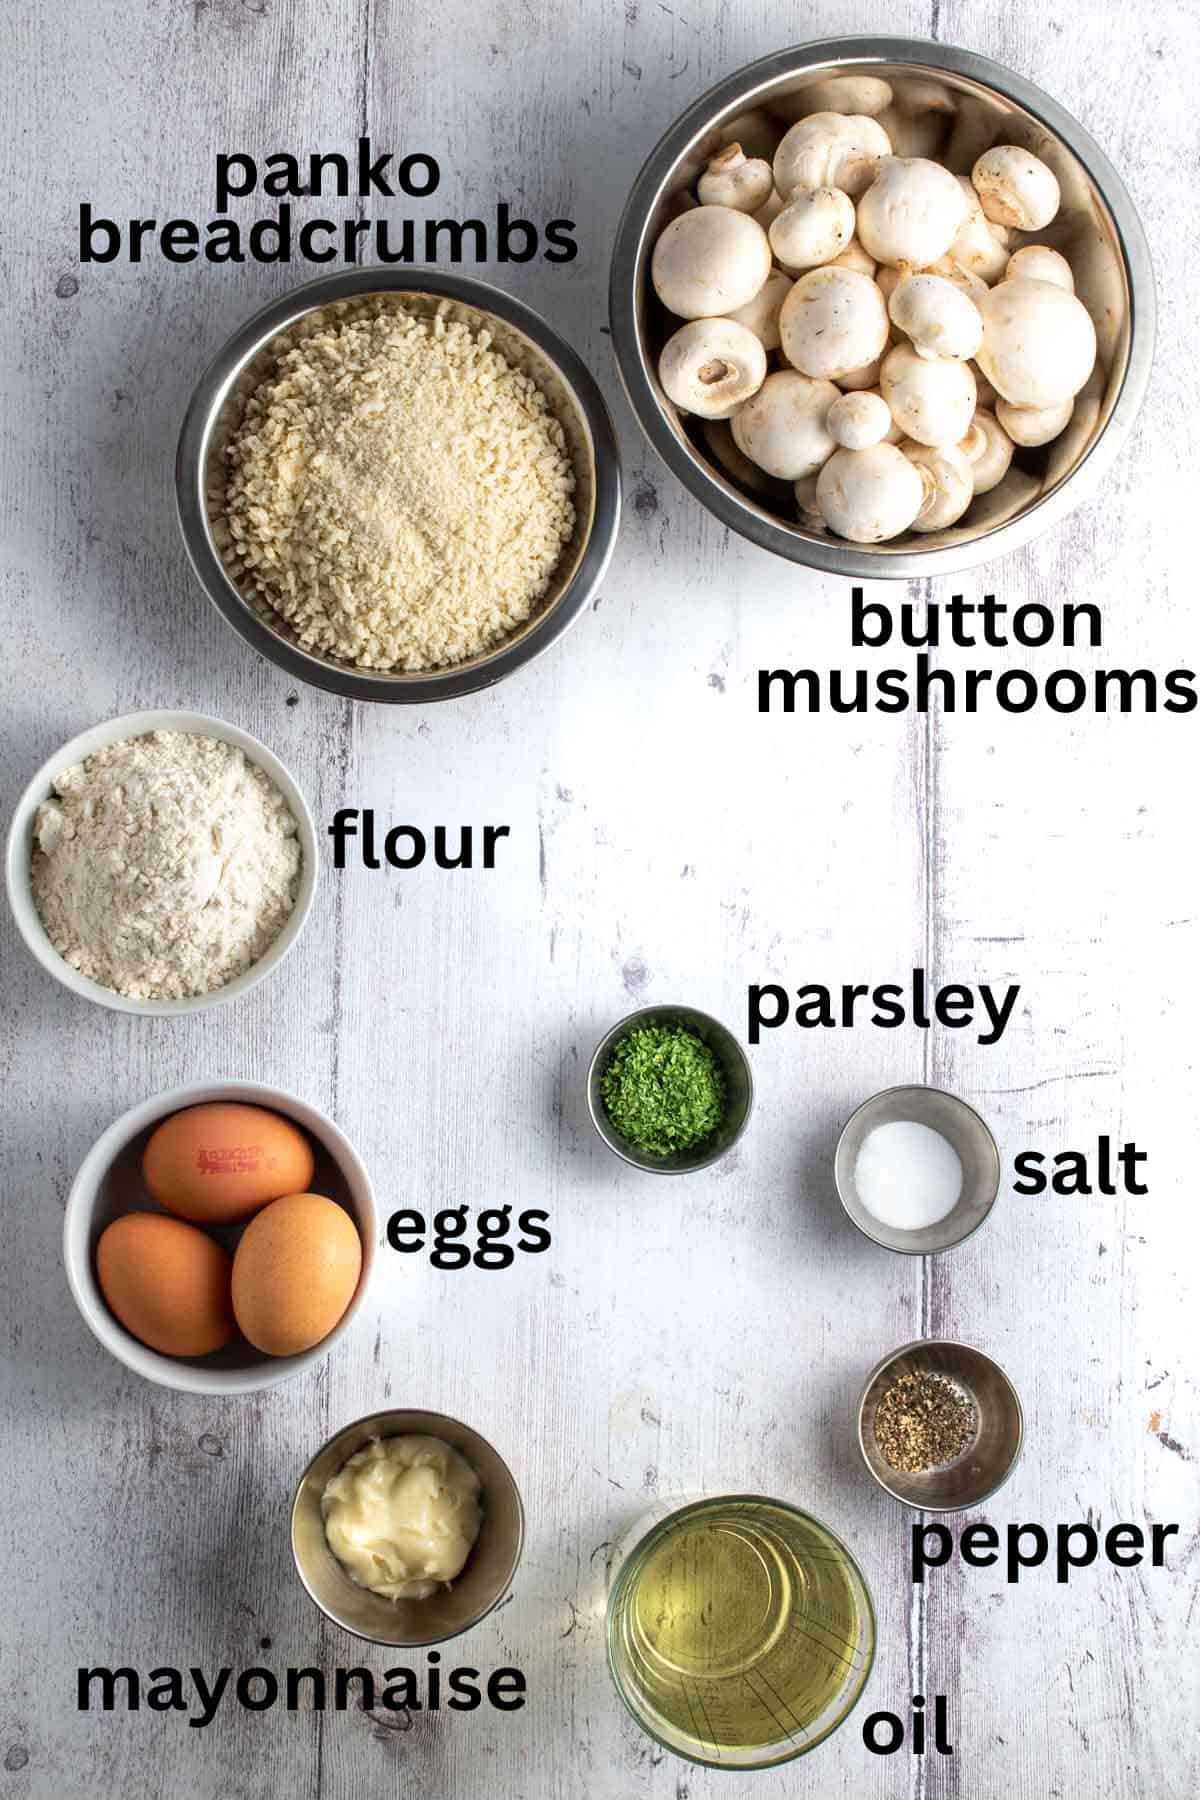 Crumbed mushrooms ingredients.